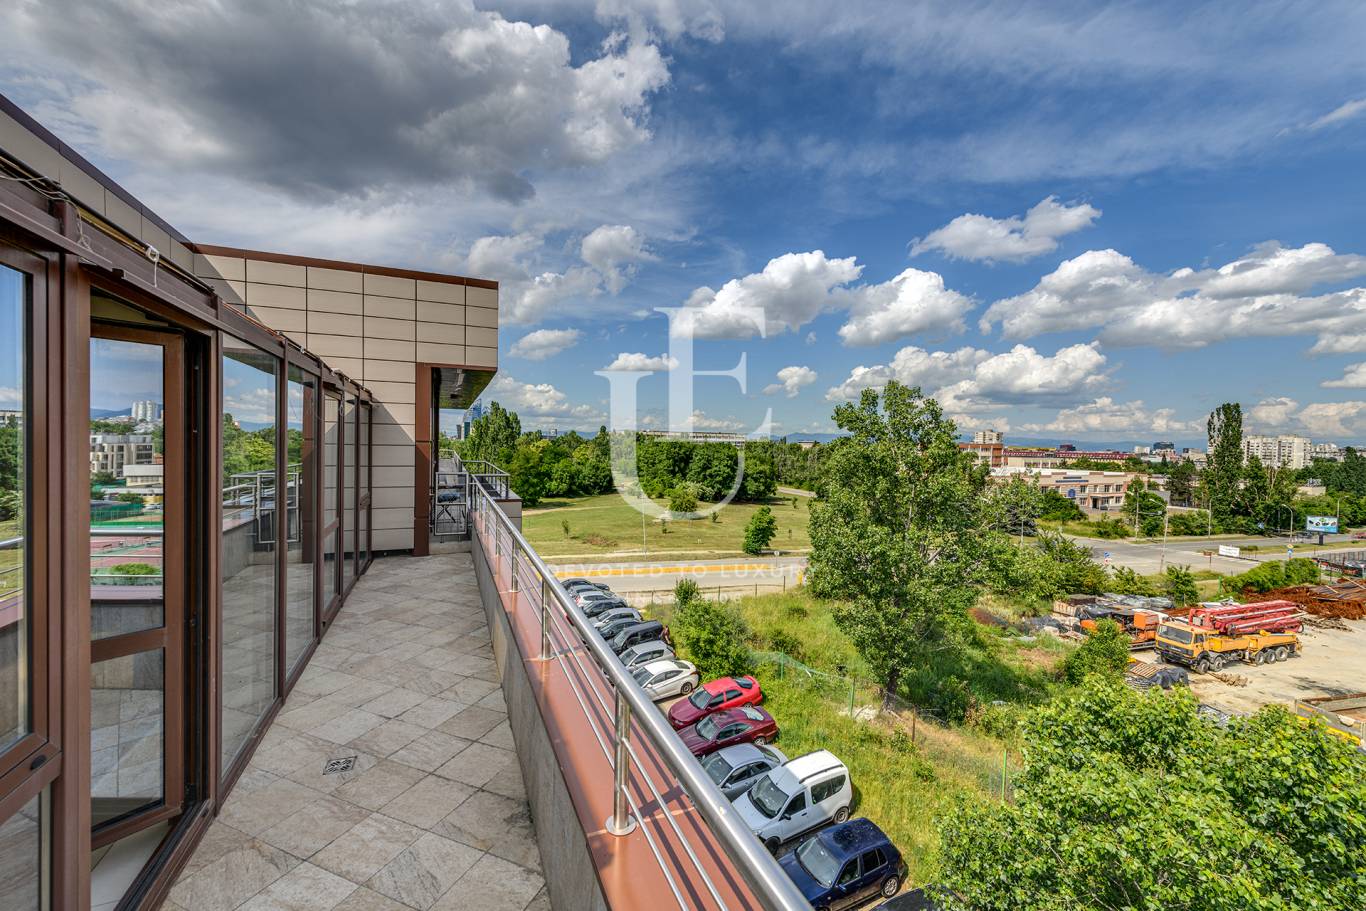 Офис под наем в София, Студентски град - код на имота: N17700 - image 1